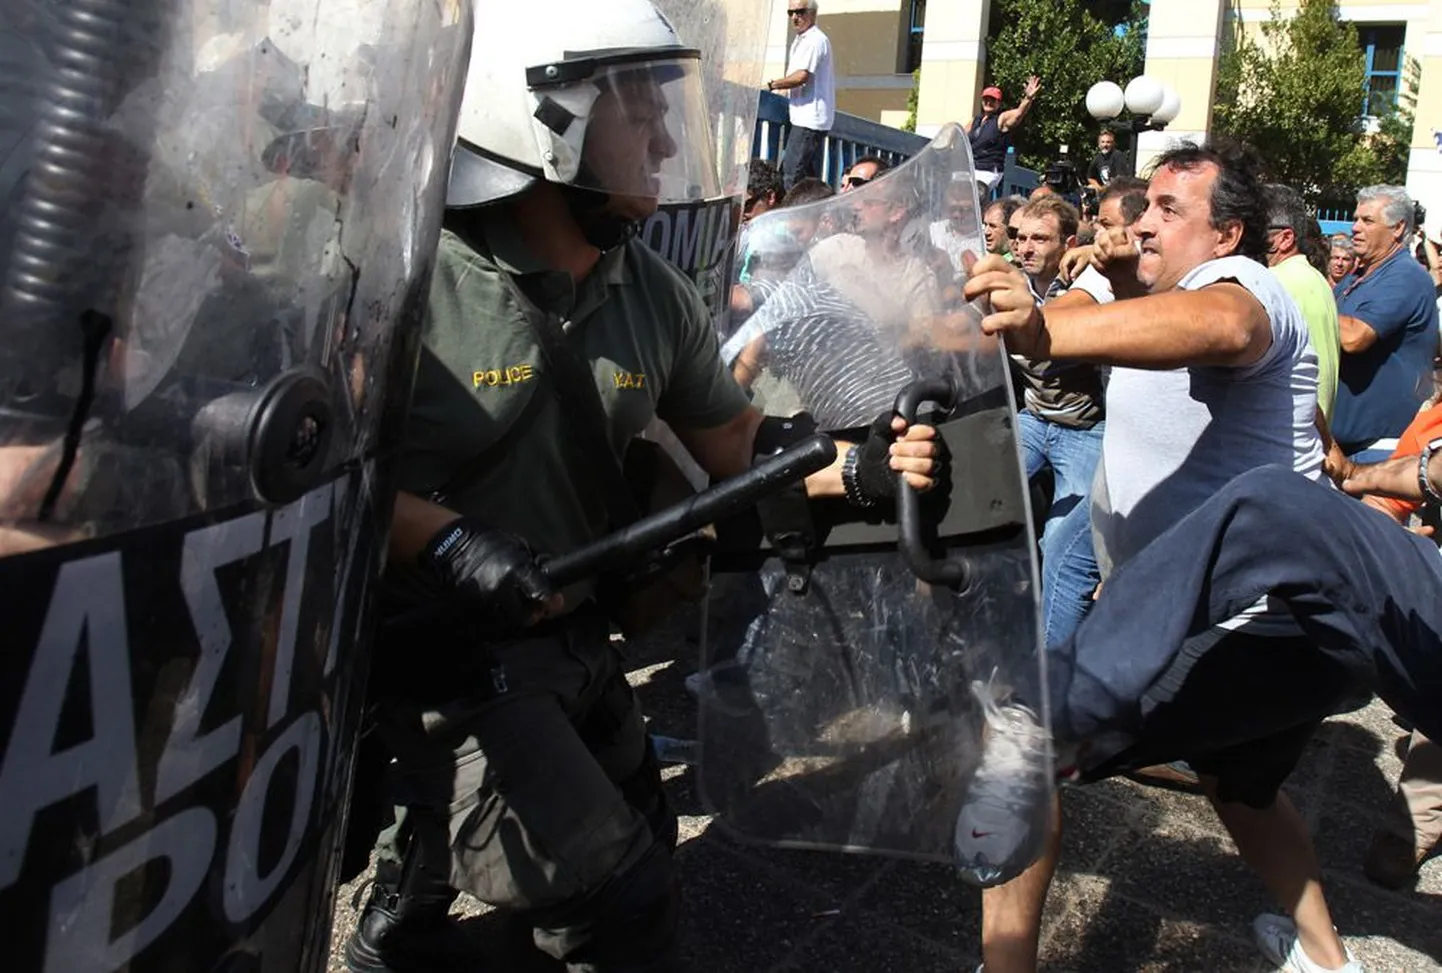 Veokijuhtide ja märulipolitsei kokkupõrge eile Ateenas.